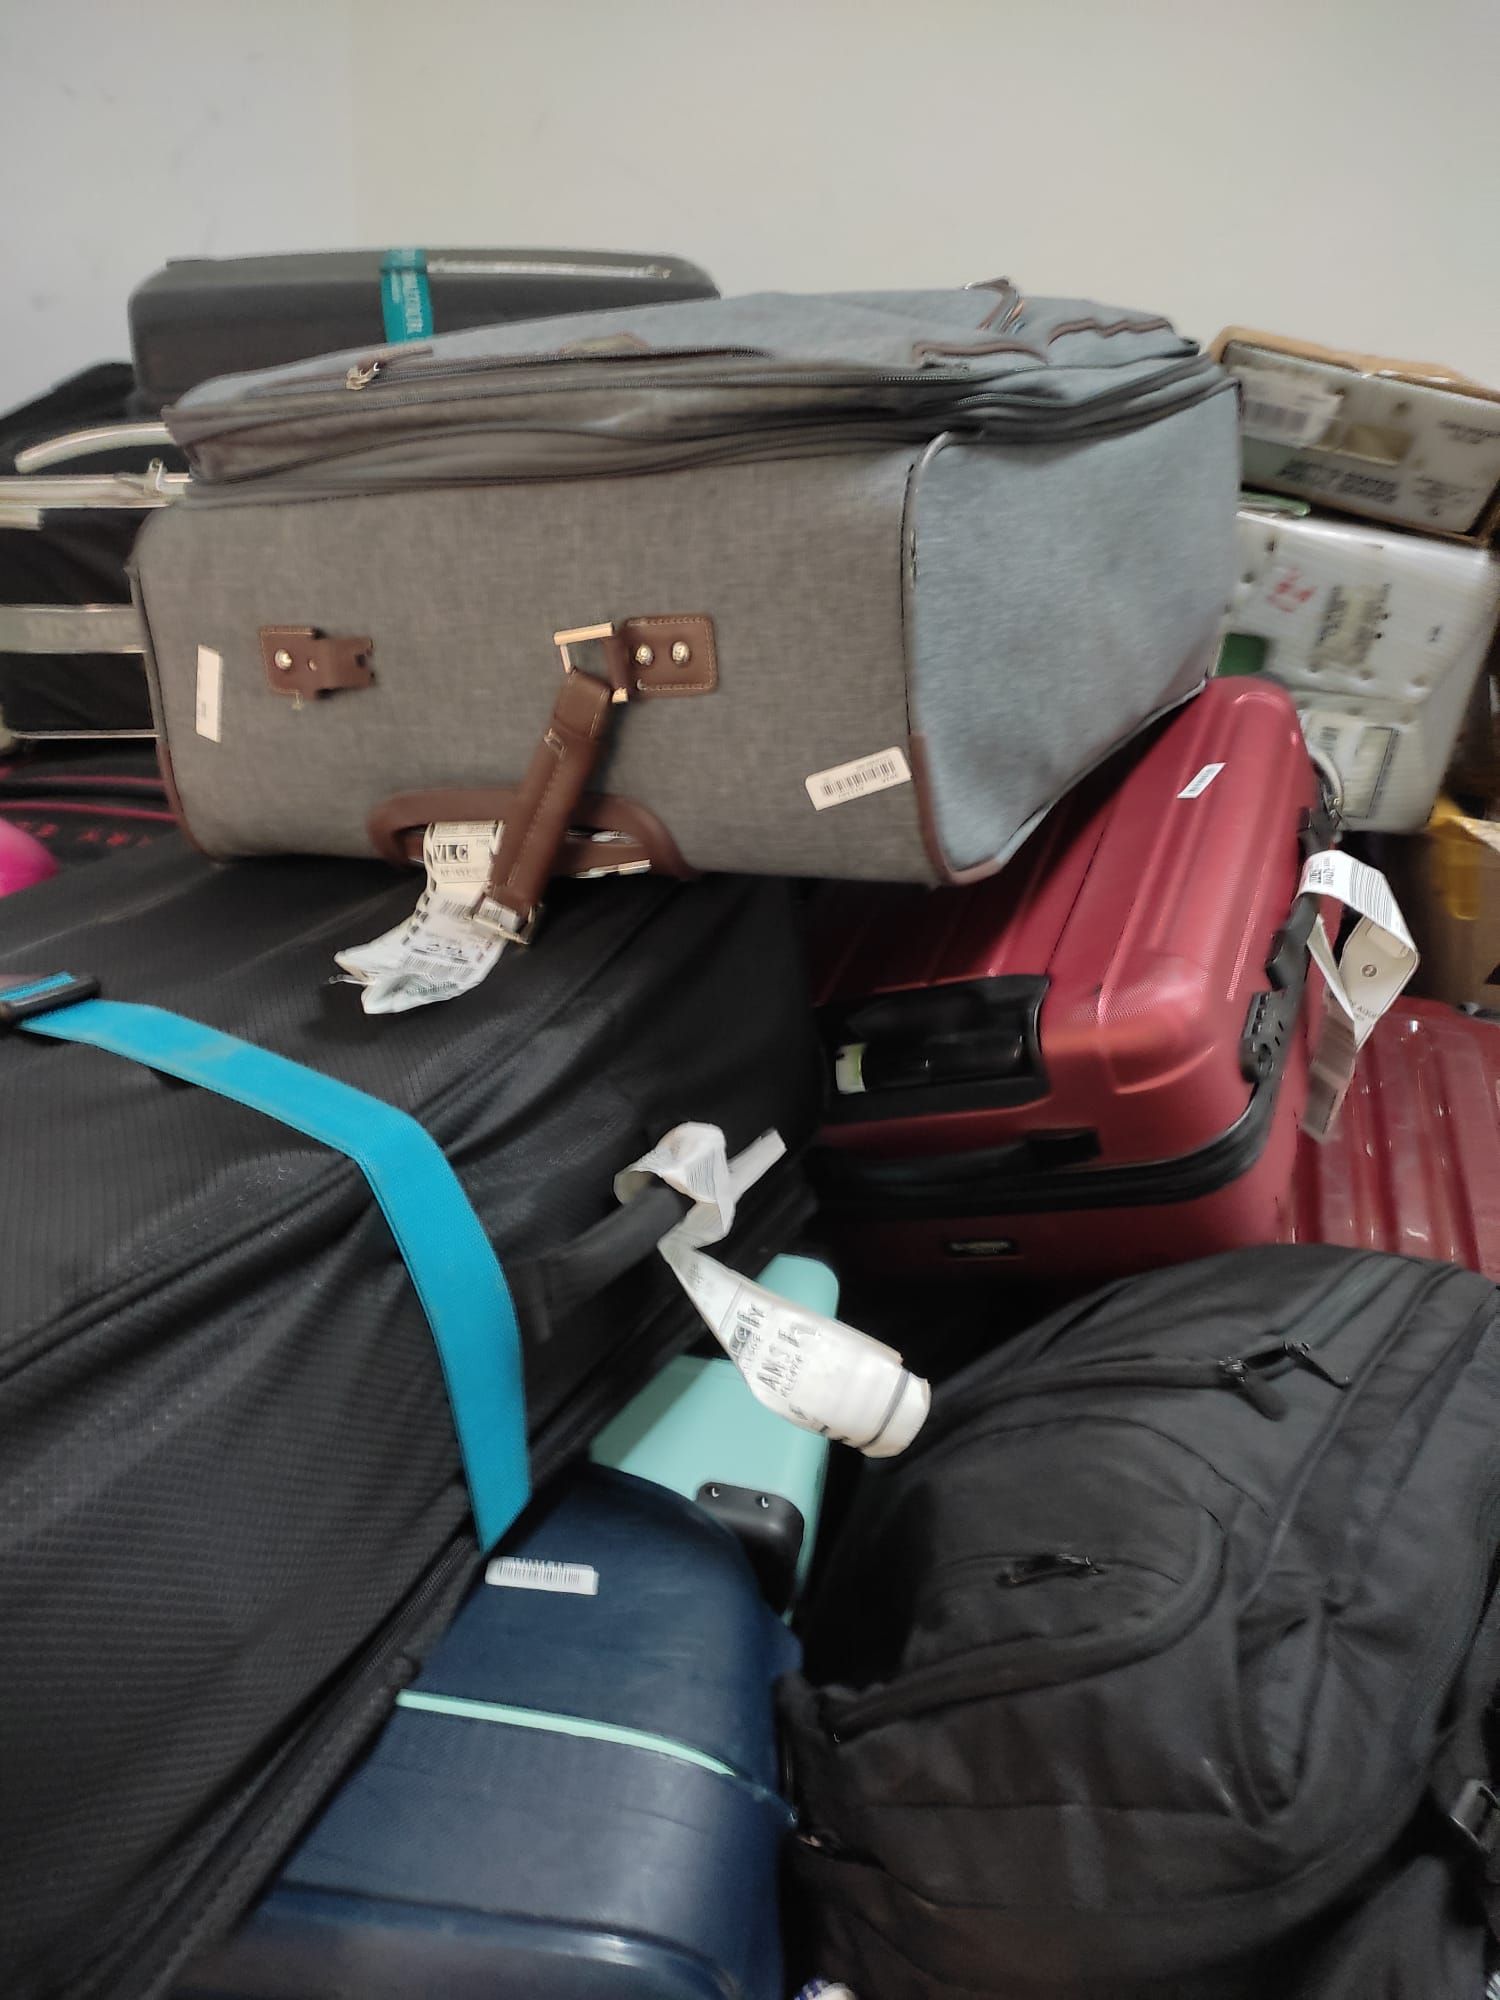 Más de 300 maletas se están acumulando en un almacén del aeropuerto de Manises desde hace semanas